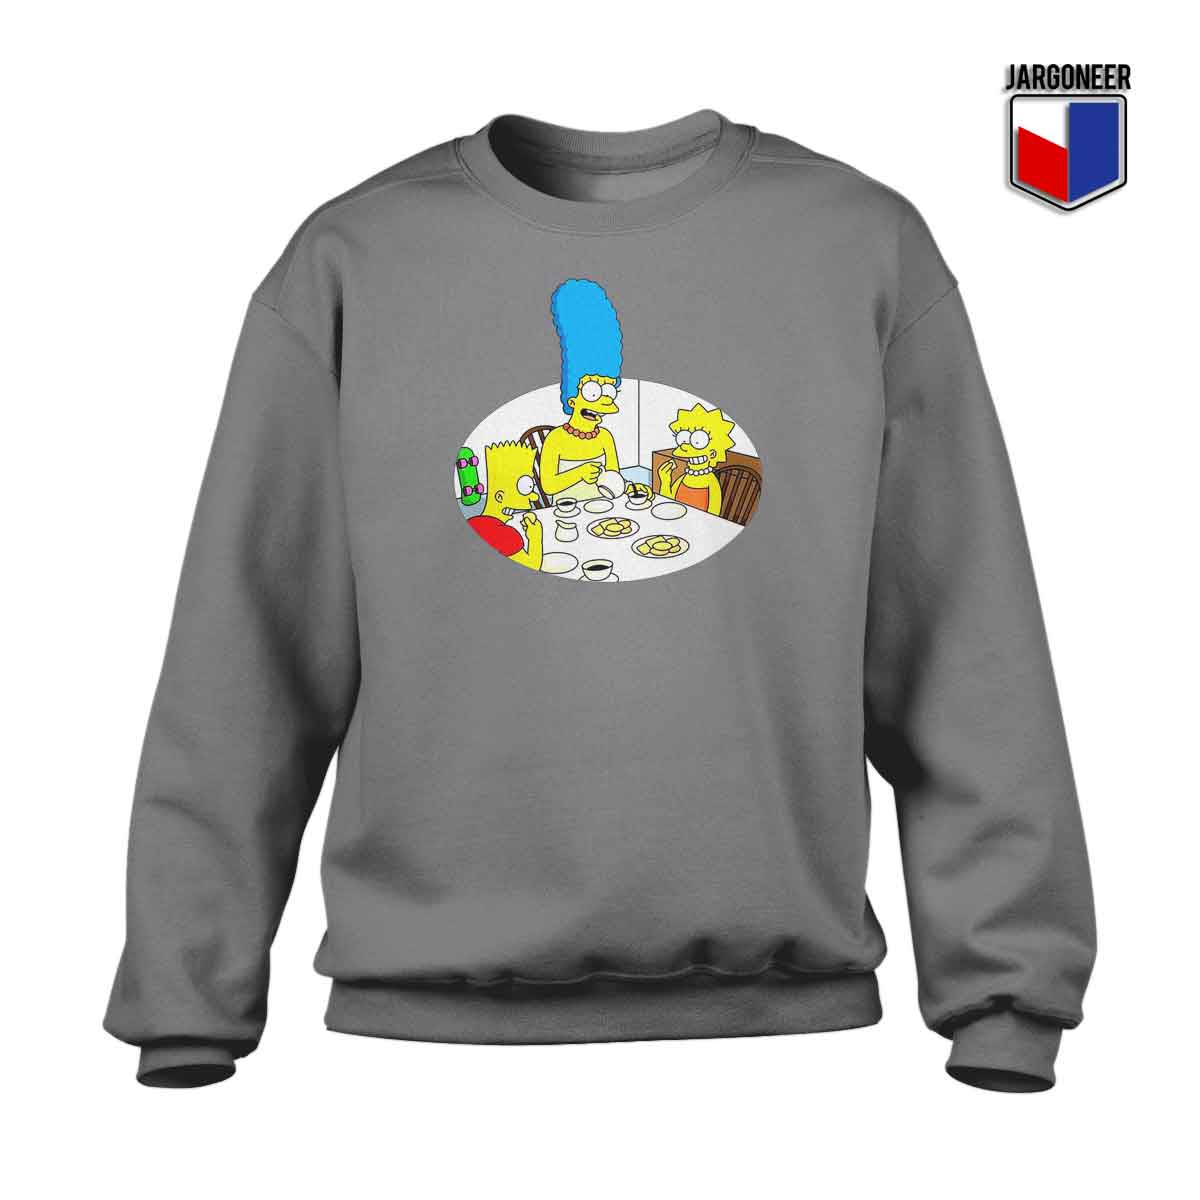 Bart Family 1 - Shop Unique Graphic Cool Shirt Designs